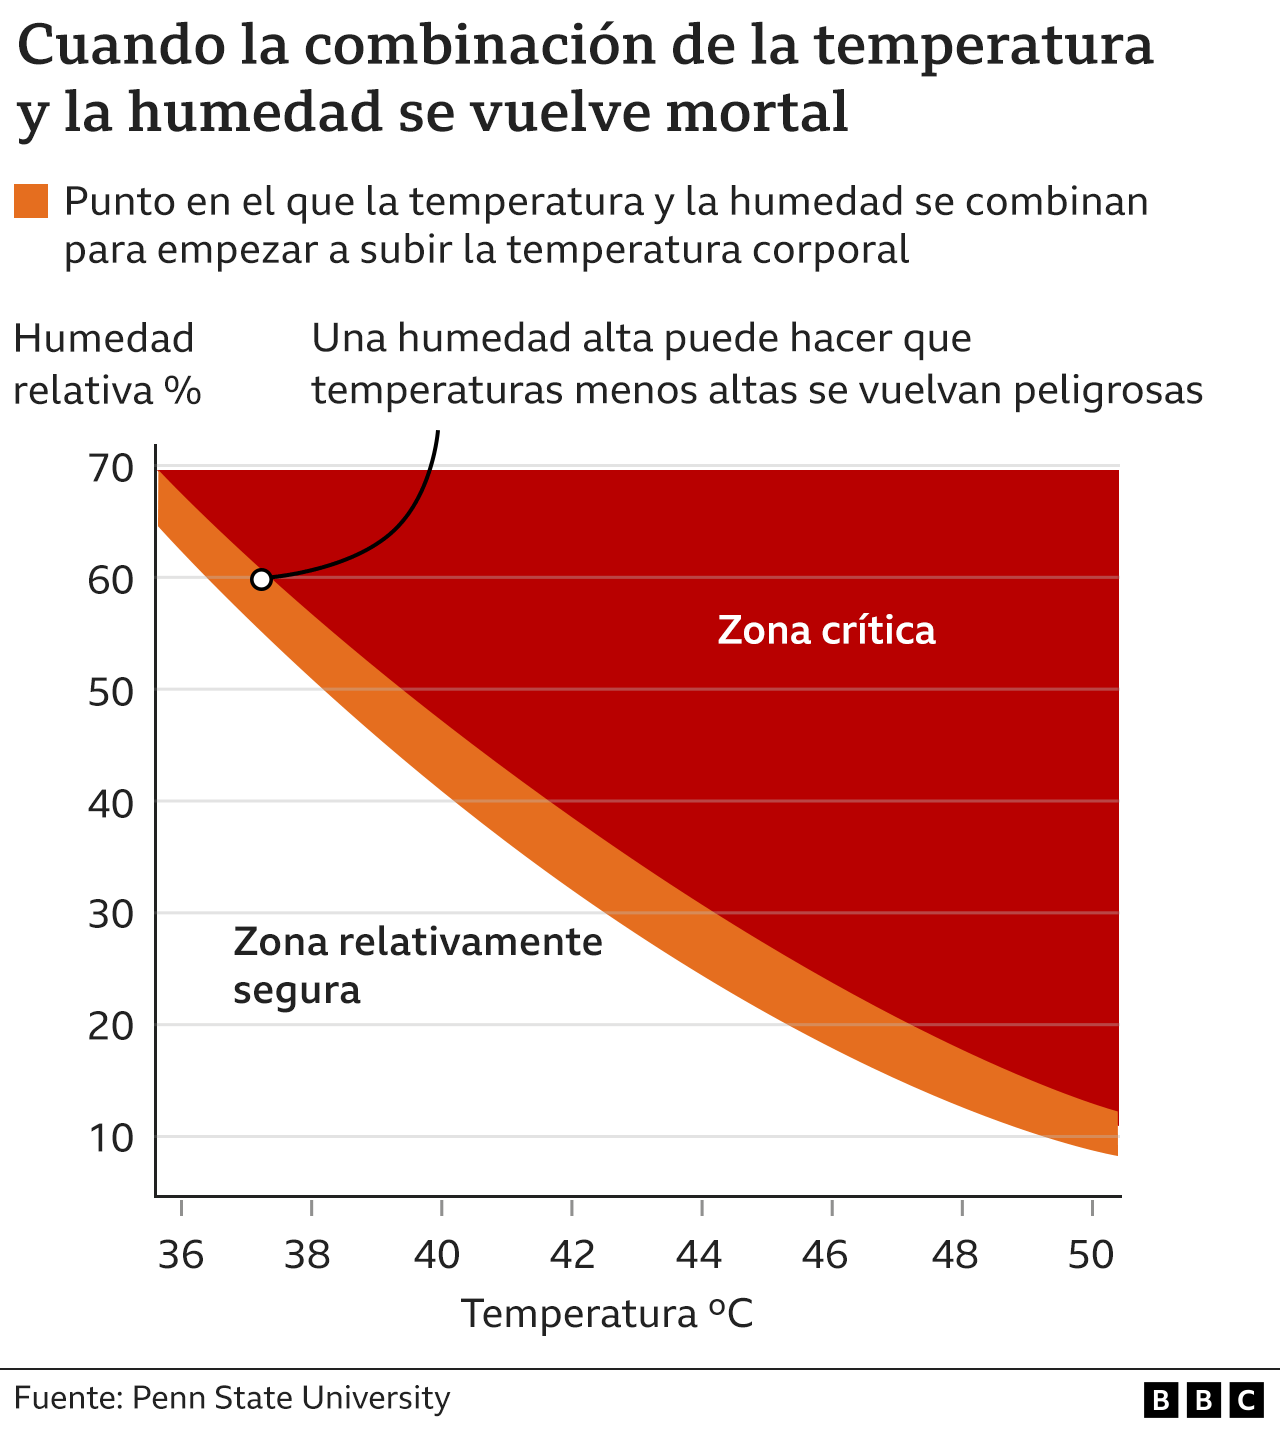 Gráfico sobre el peligro de la temperatura y la humedad en el cuerpo humano.